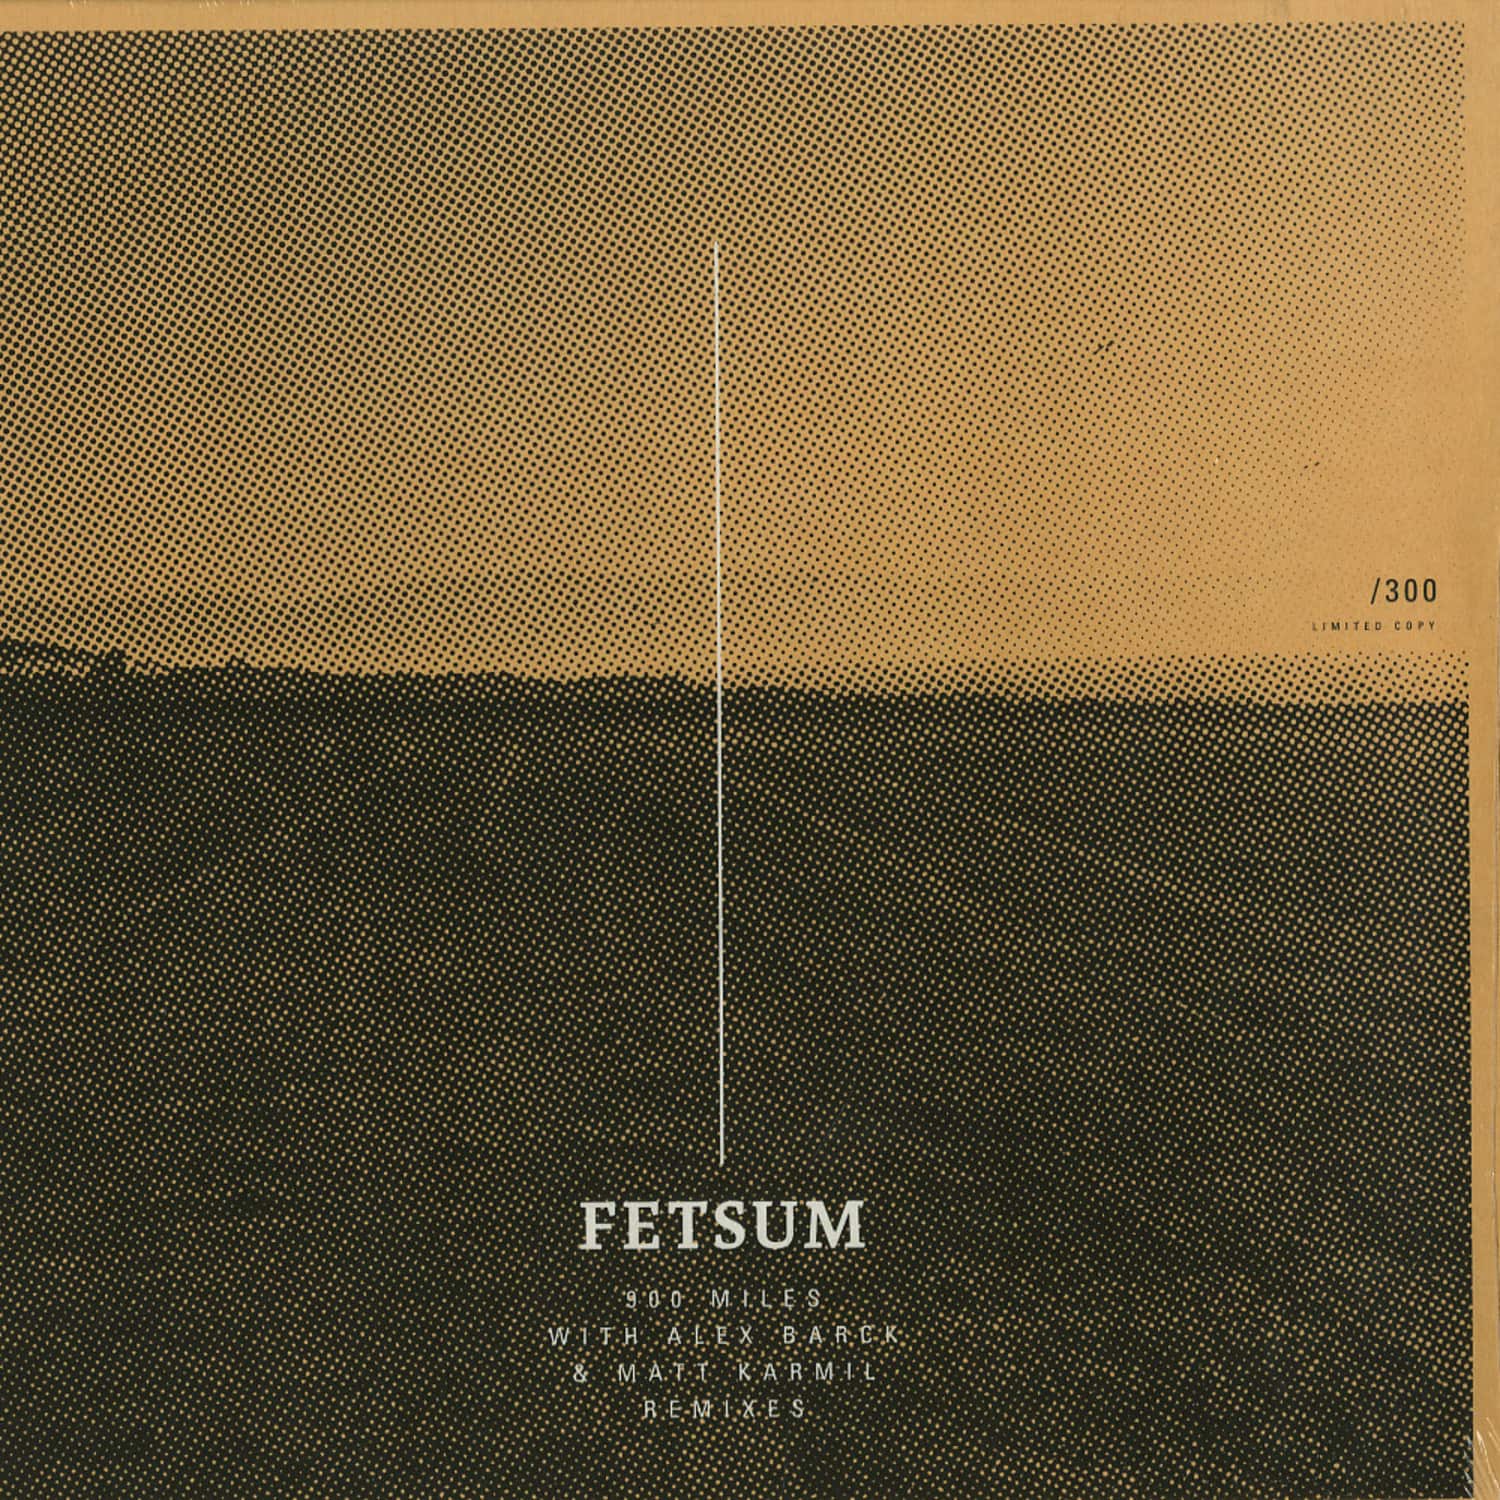 Fetsum - 900 MILES 